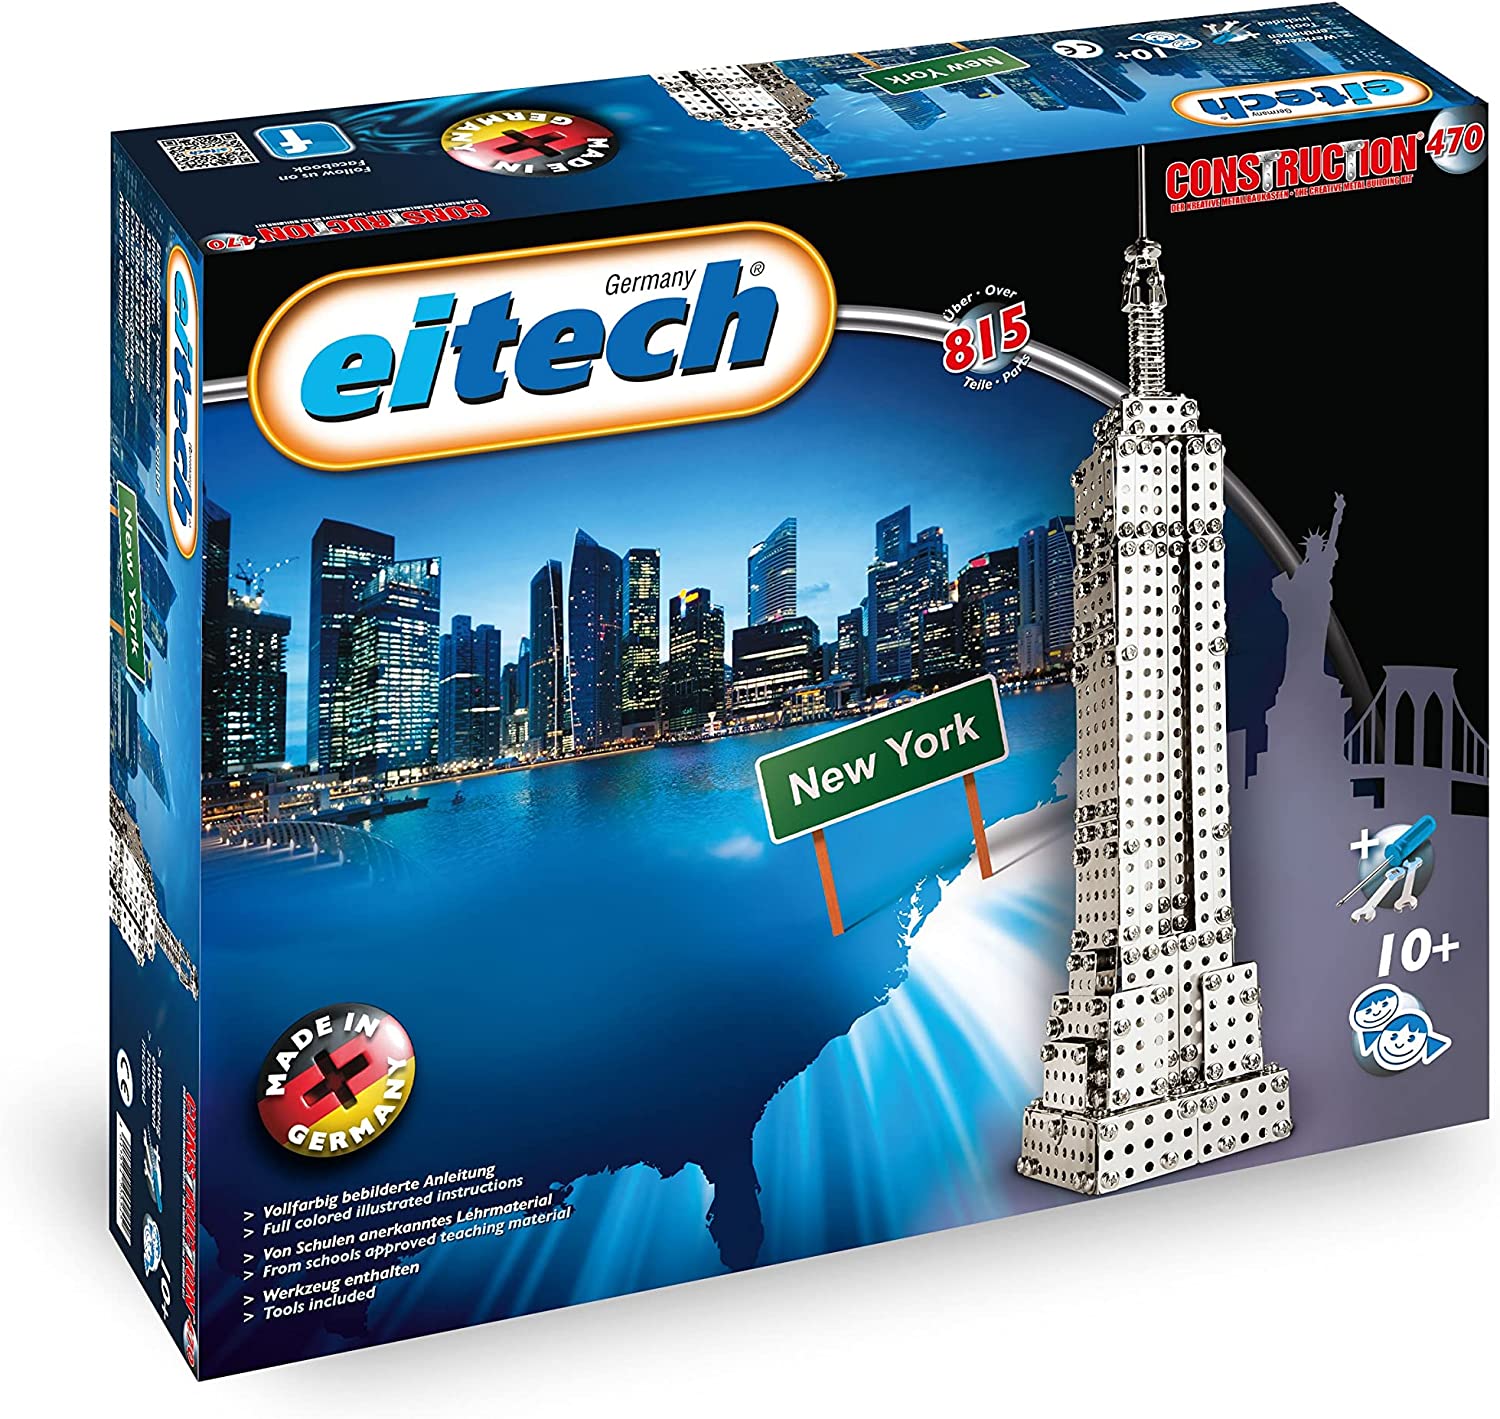 Eitech 00470 Metallbaukasten Empire State Building Set  Eitech   